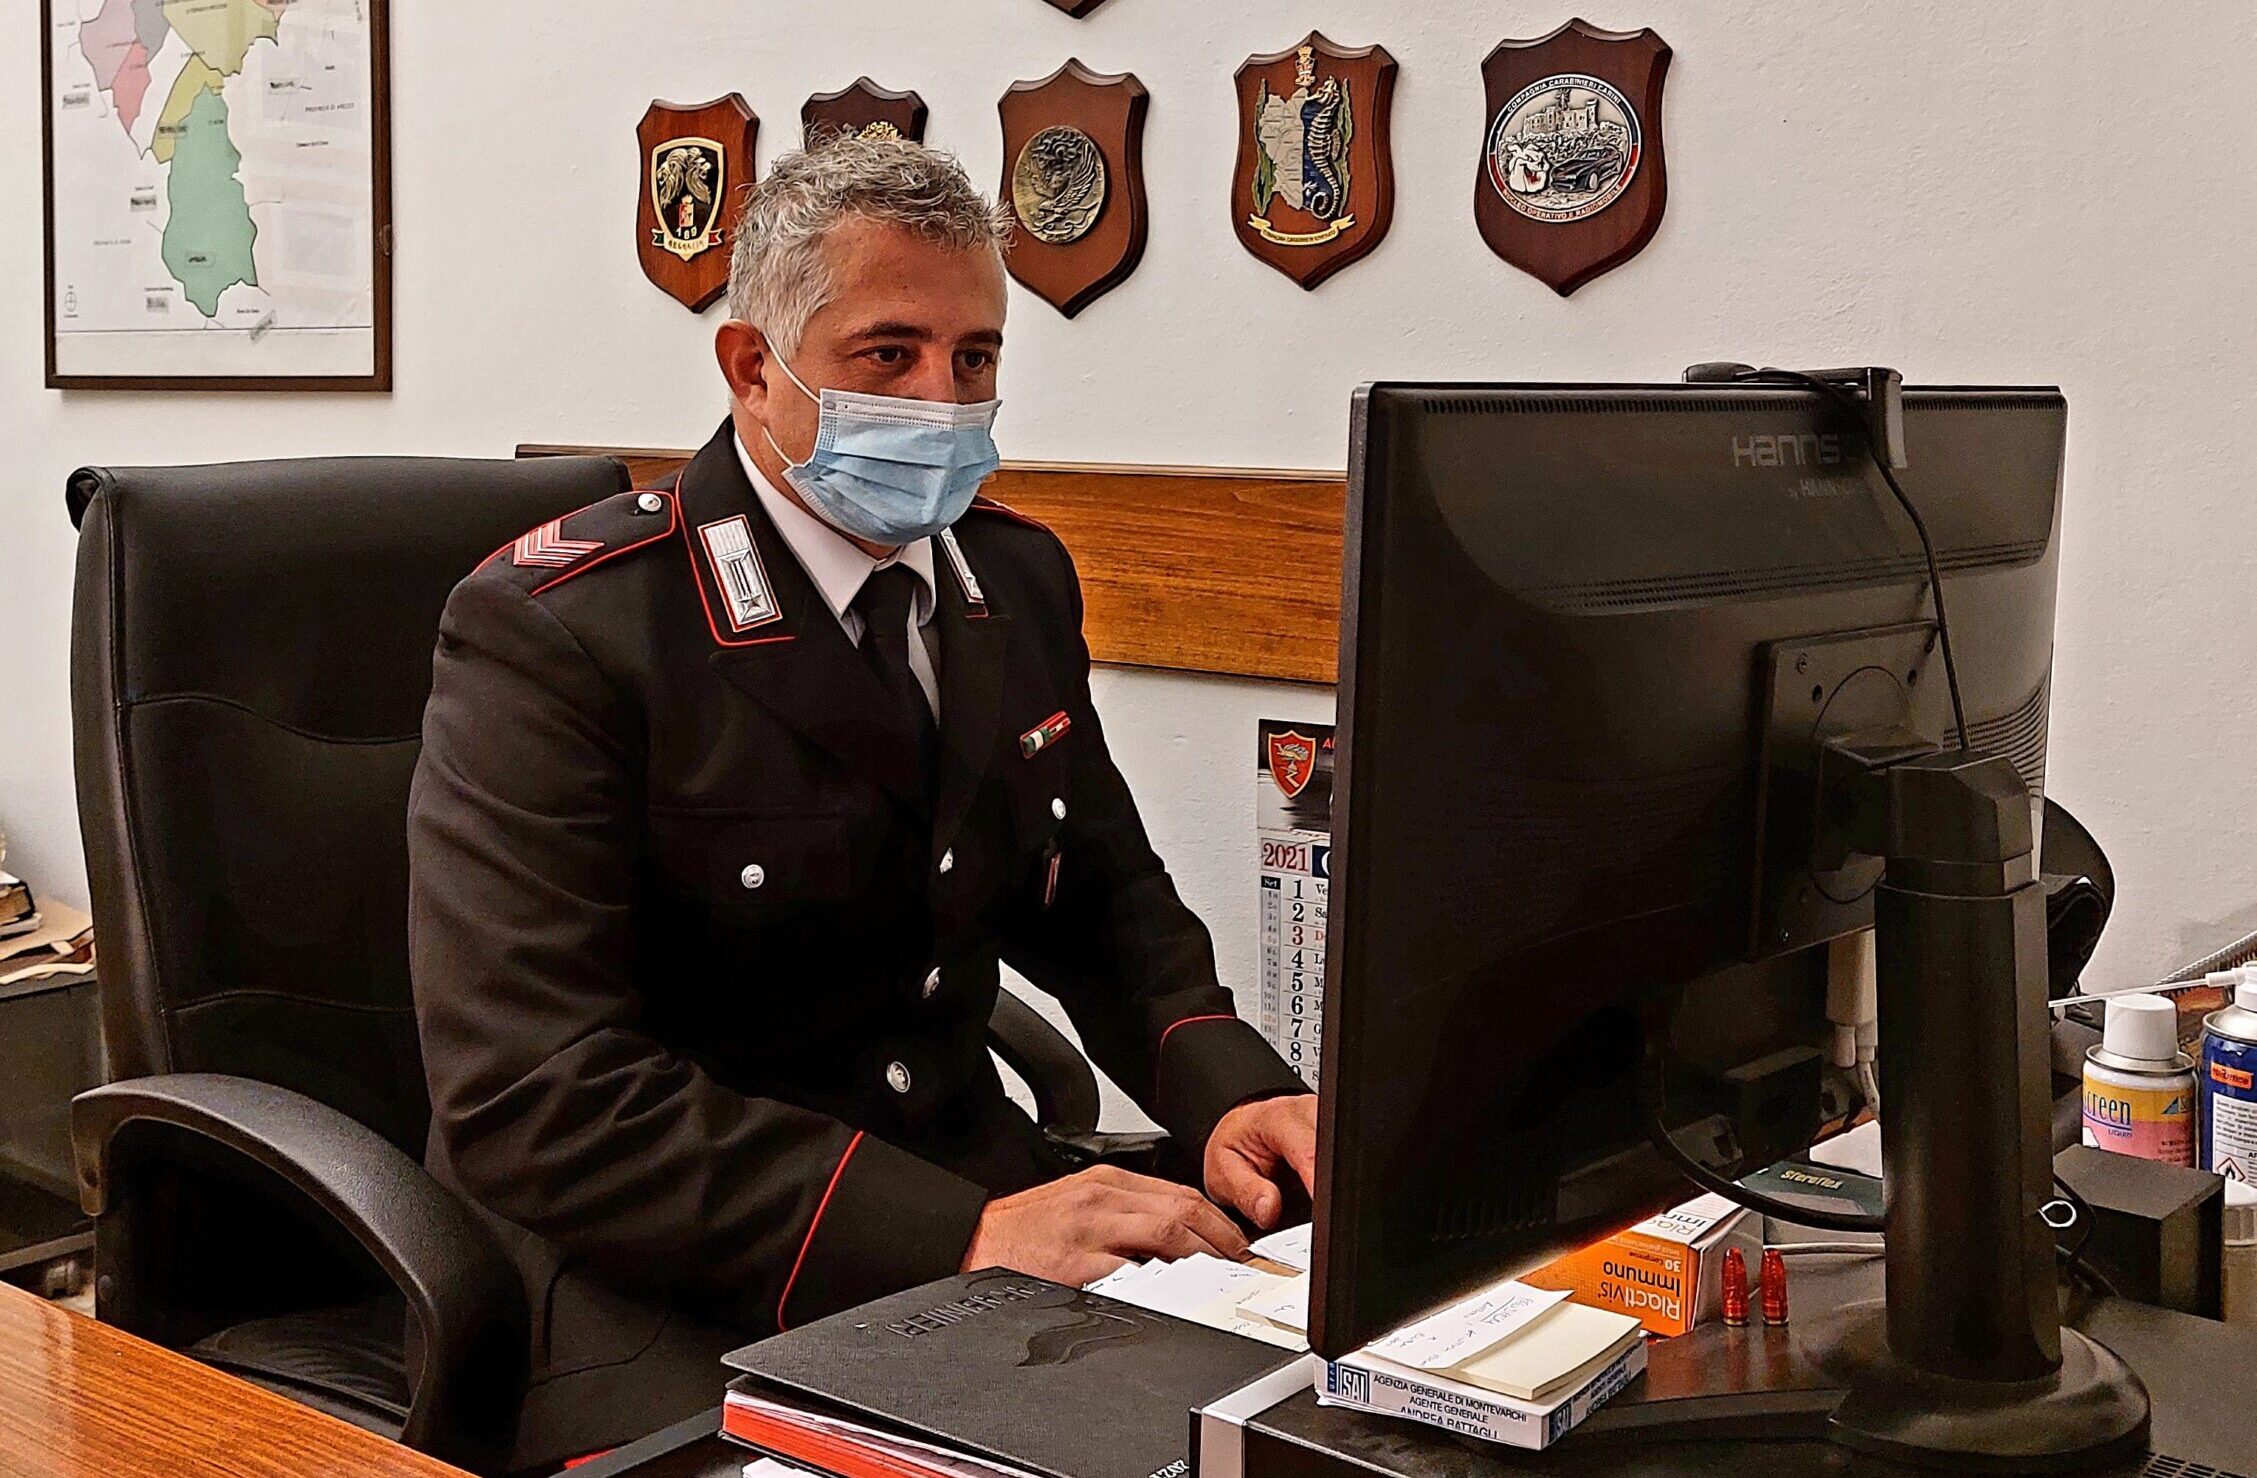 Montevarchi: duplice operazione antifrode dei carabinieri. Identificati e deferiti all’autorità giudiziaria 4 soggetti dediti alle truffe online